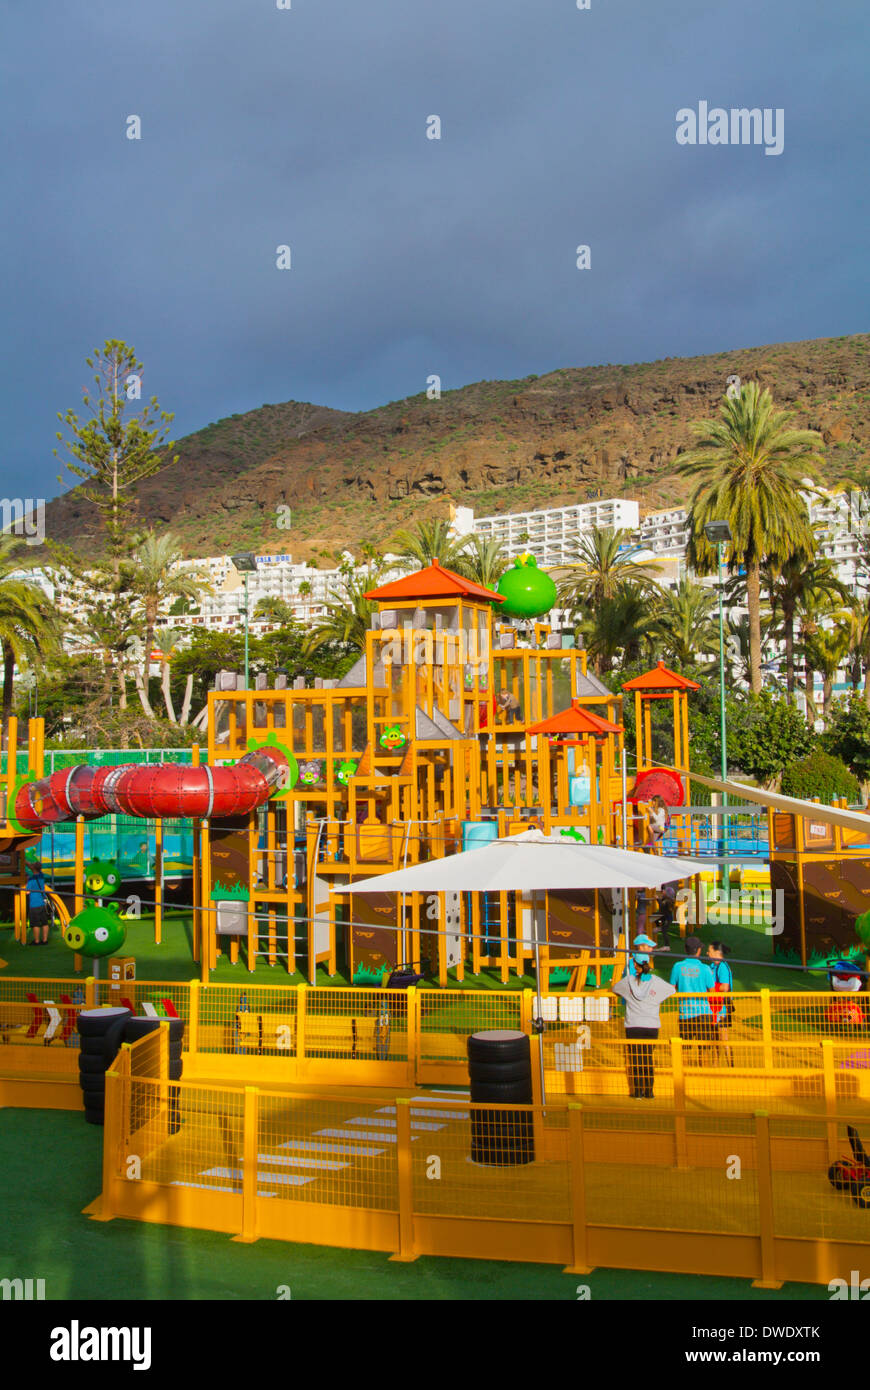 Angry Birds-Themenpark, Puerto Rico, Gran Canaria Insel, Kanaren, Spanien, Europa Stockfoto